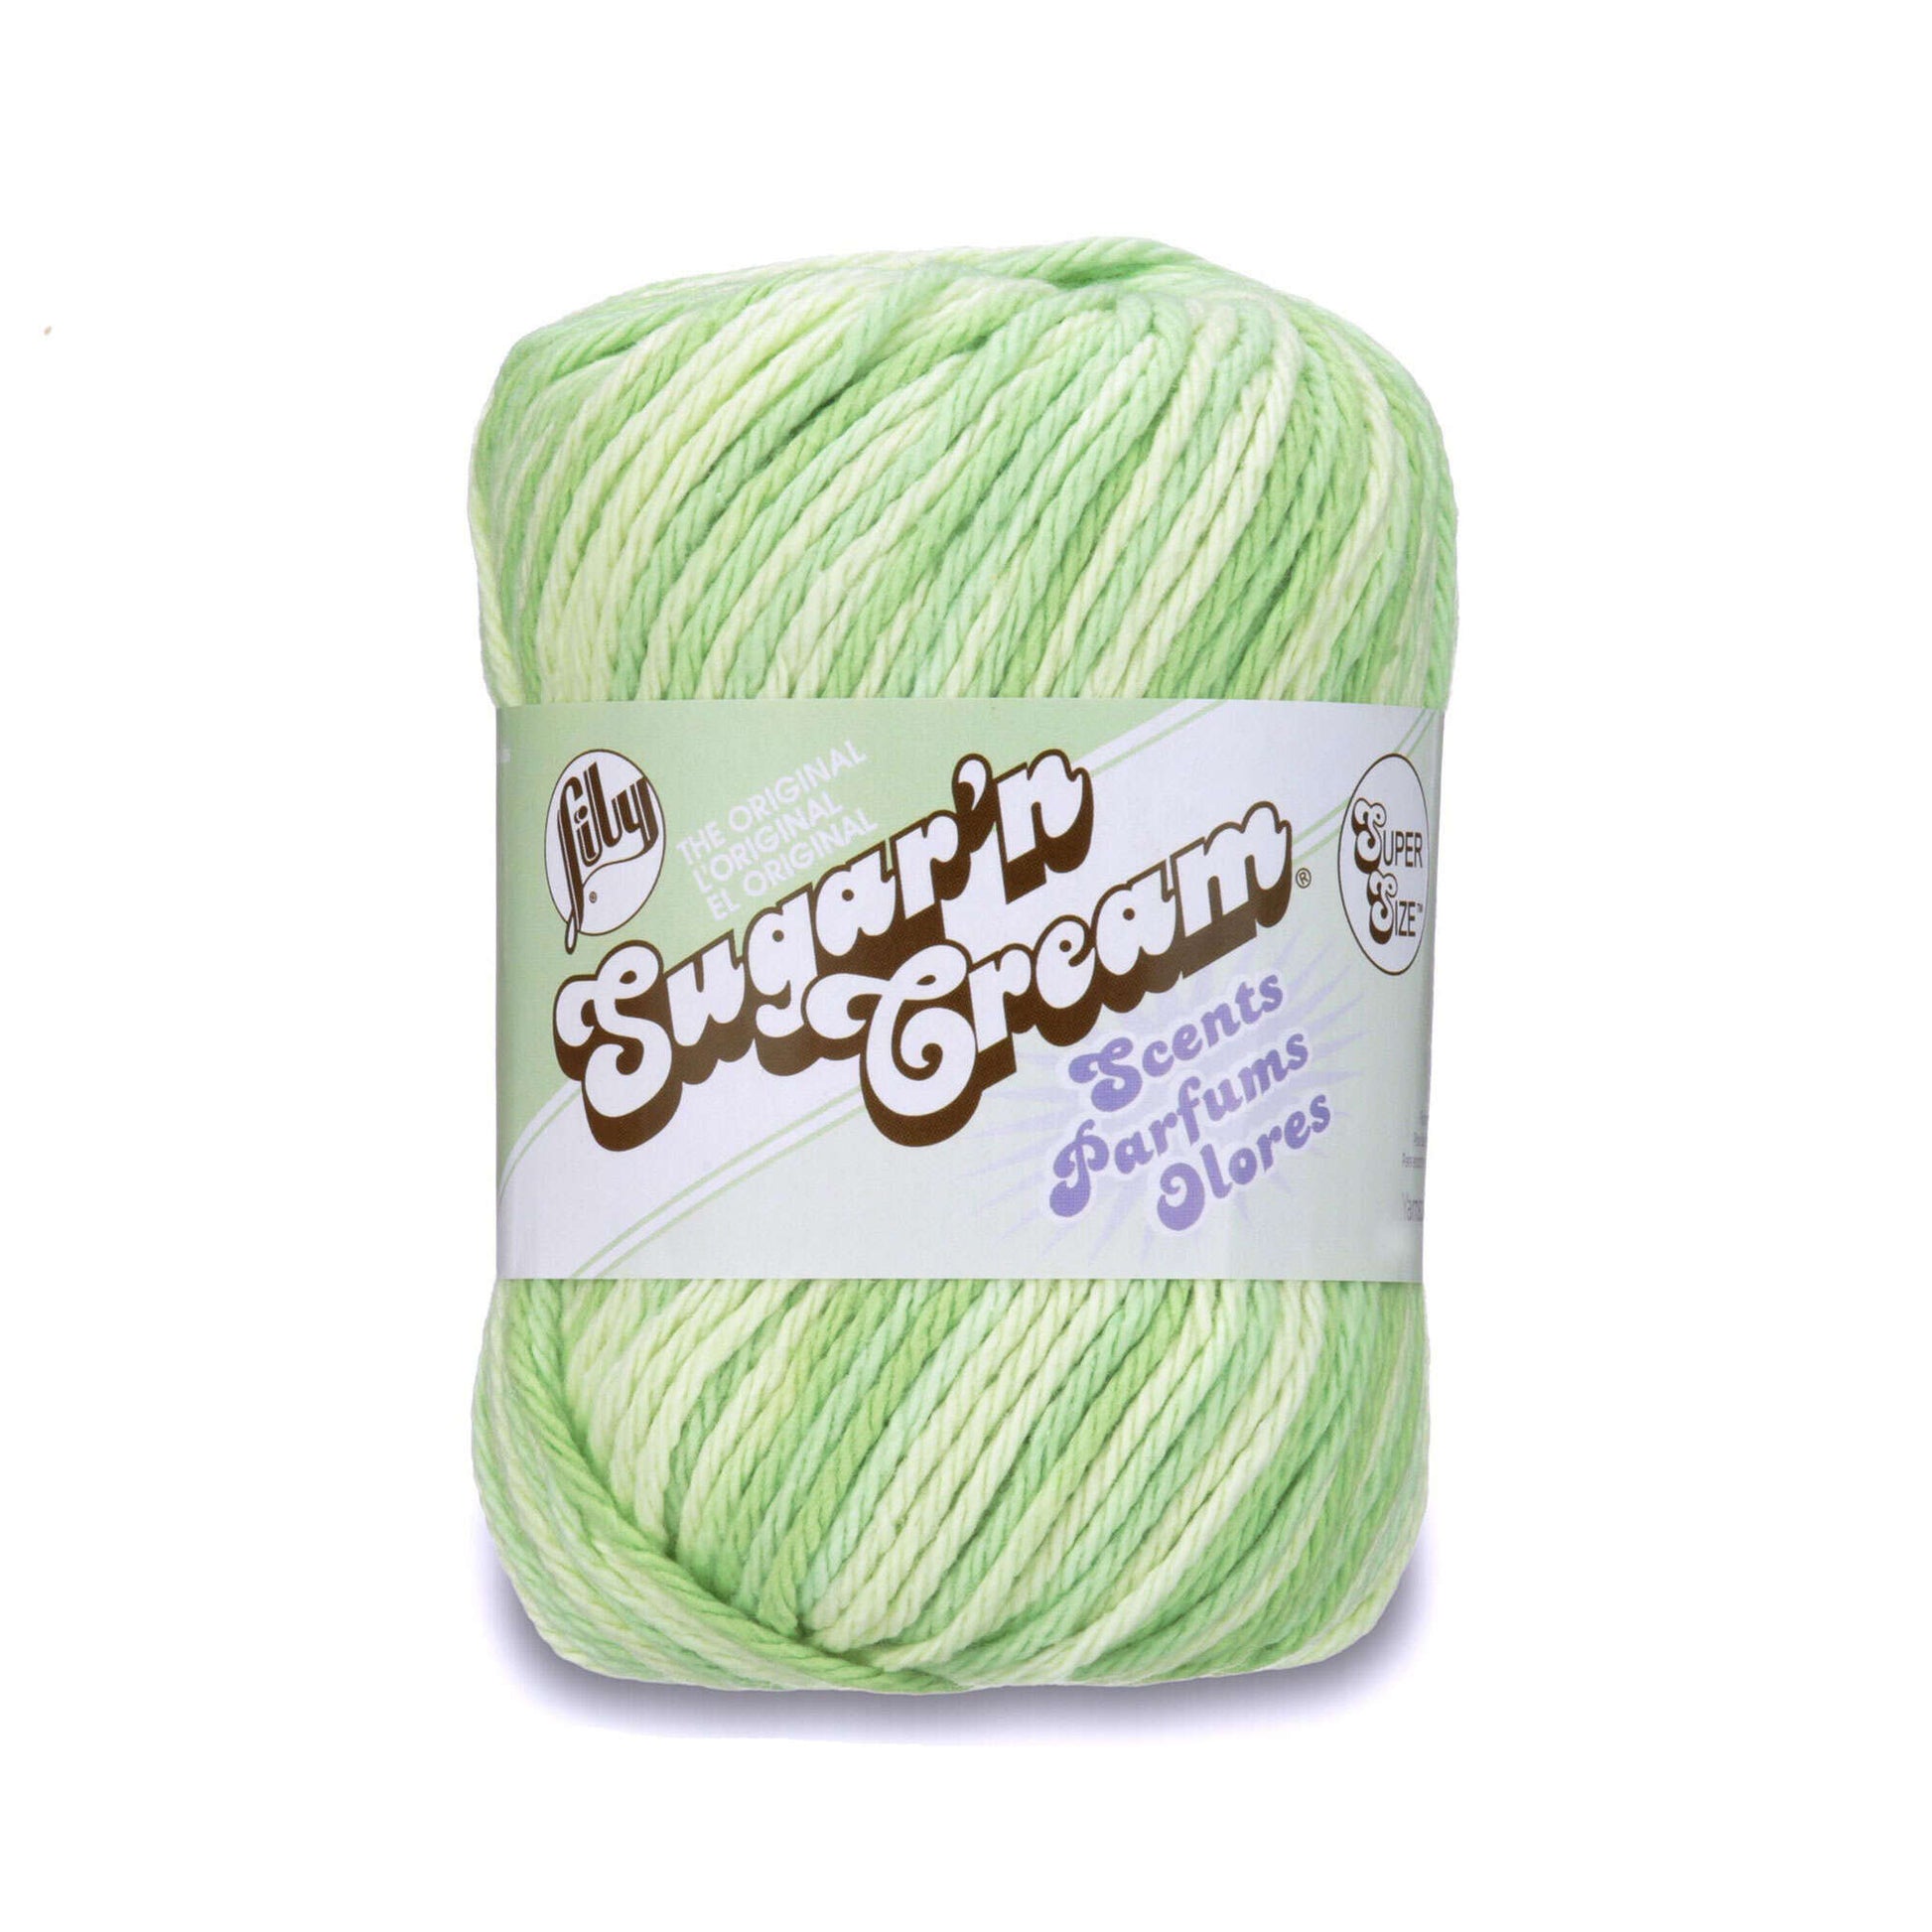 Lily Sugar N Cream Super Size Cotton Yarn( 4 - Medium,85g ) - CLEARANCE by  www.